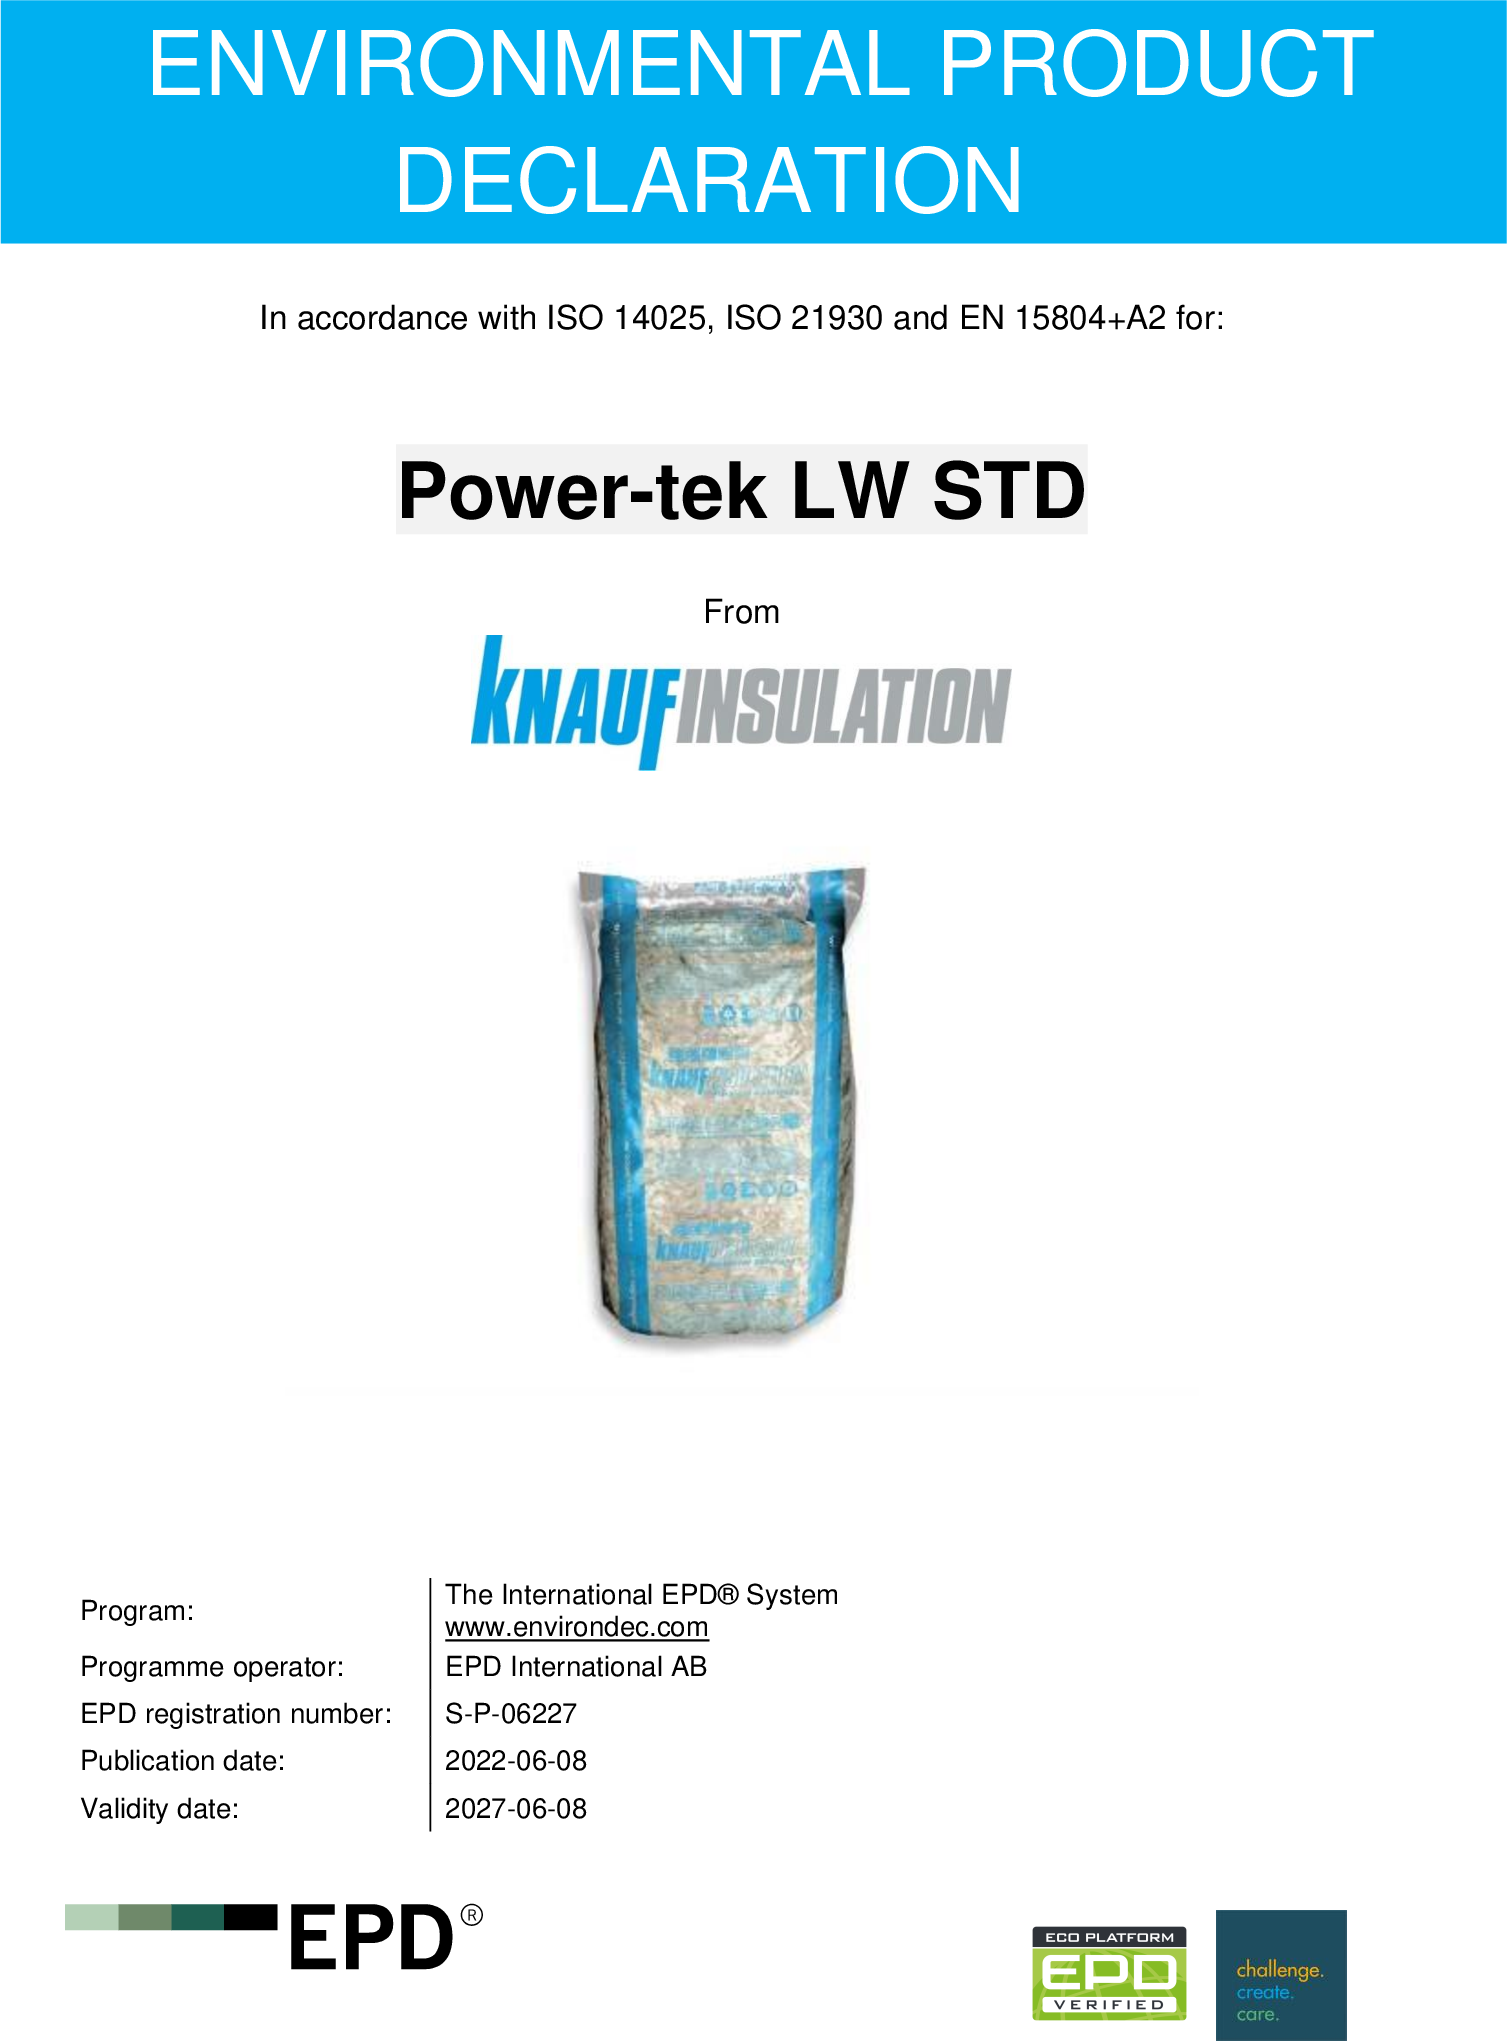 Power-tek LW STD